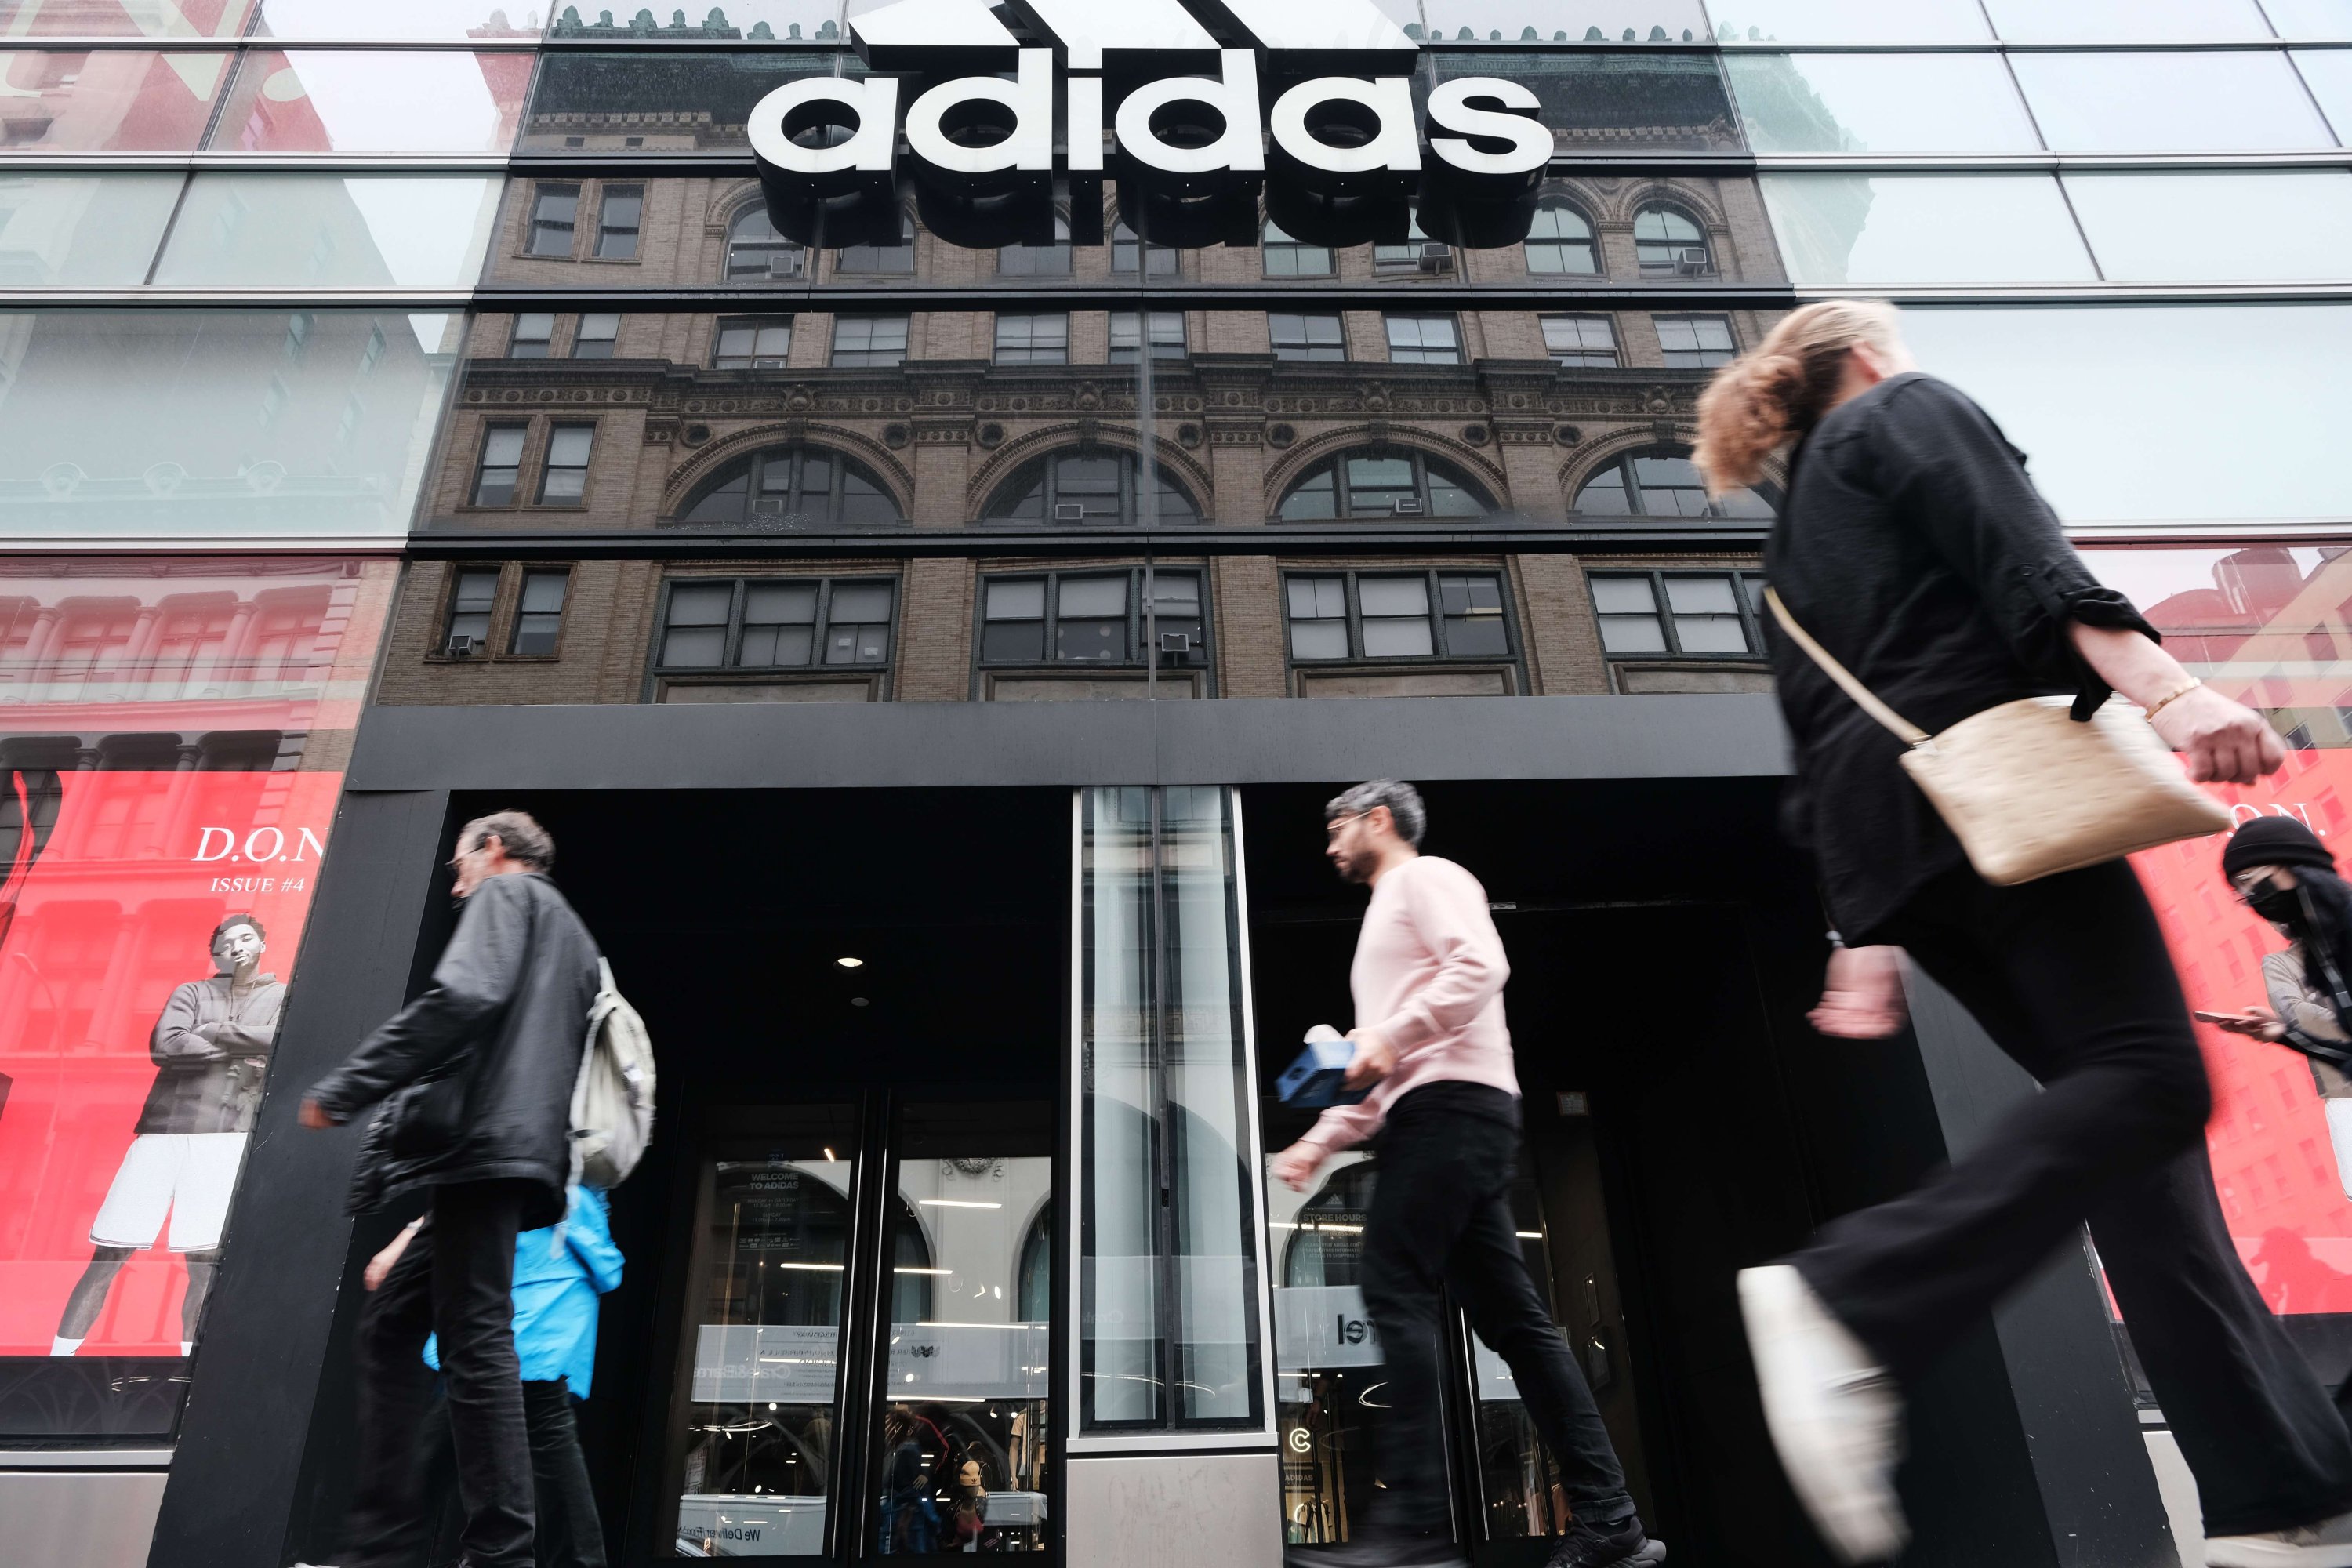 Adidas names CEO of rival as new boss Sabah